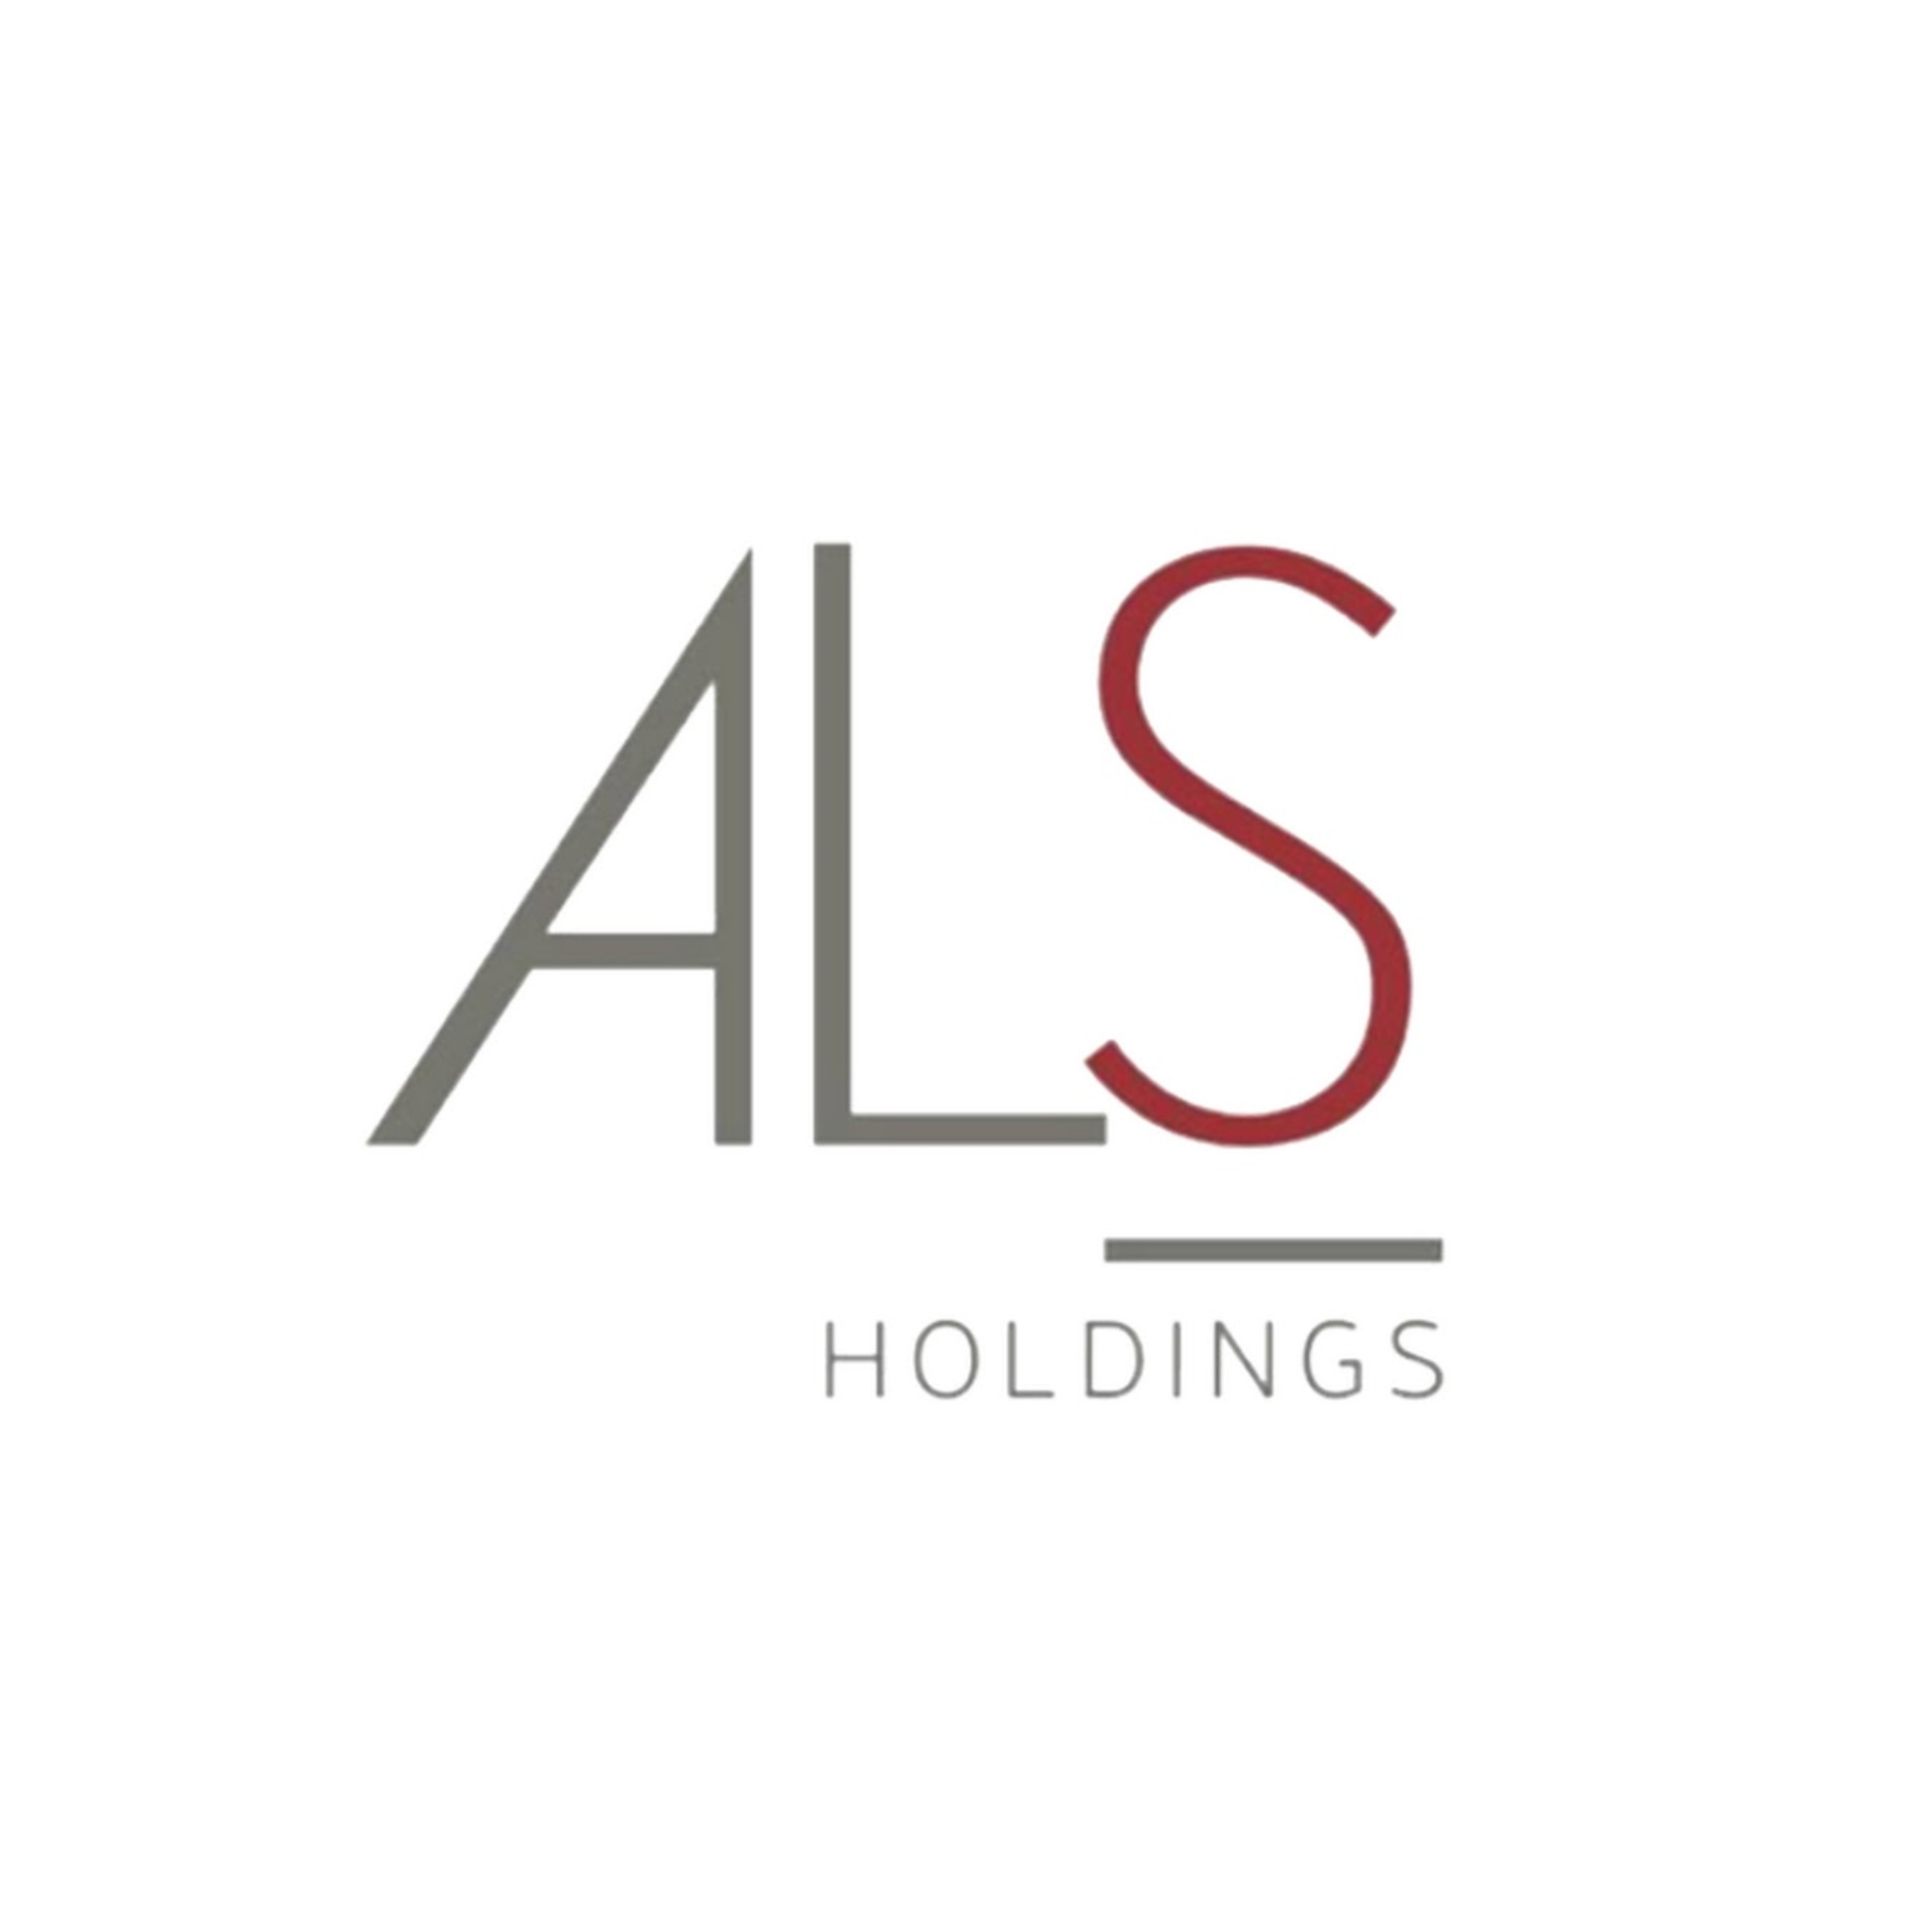 PT. Dewi Sri Transindo Utama (ALS Holdings)